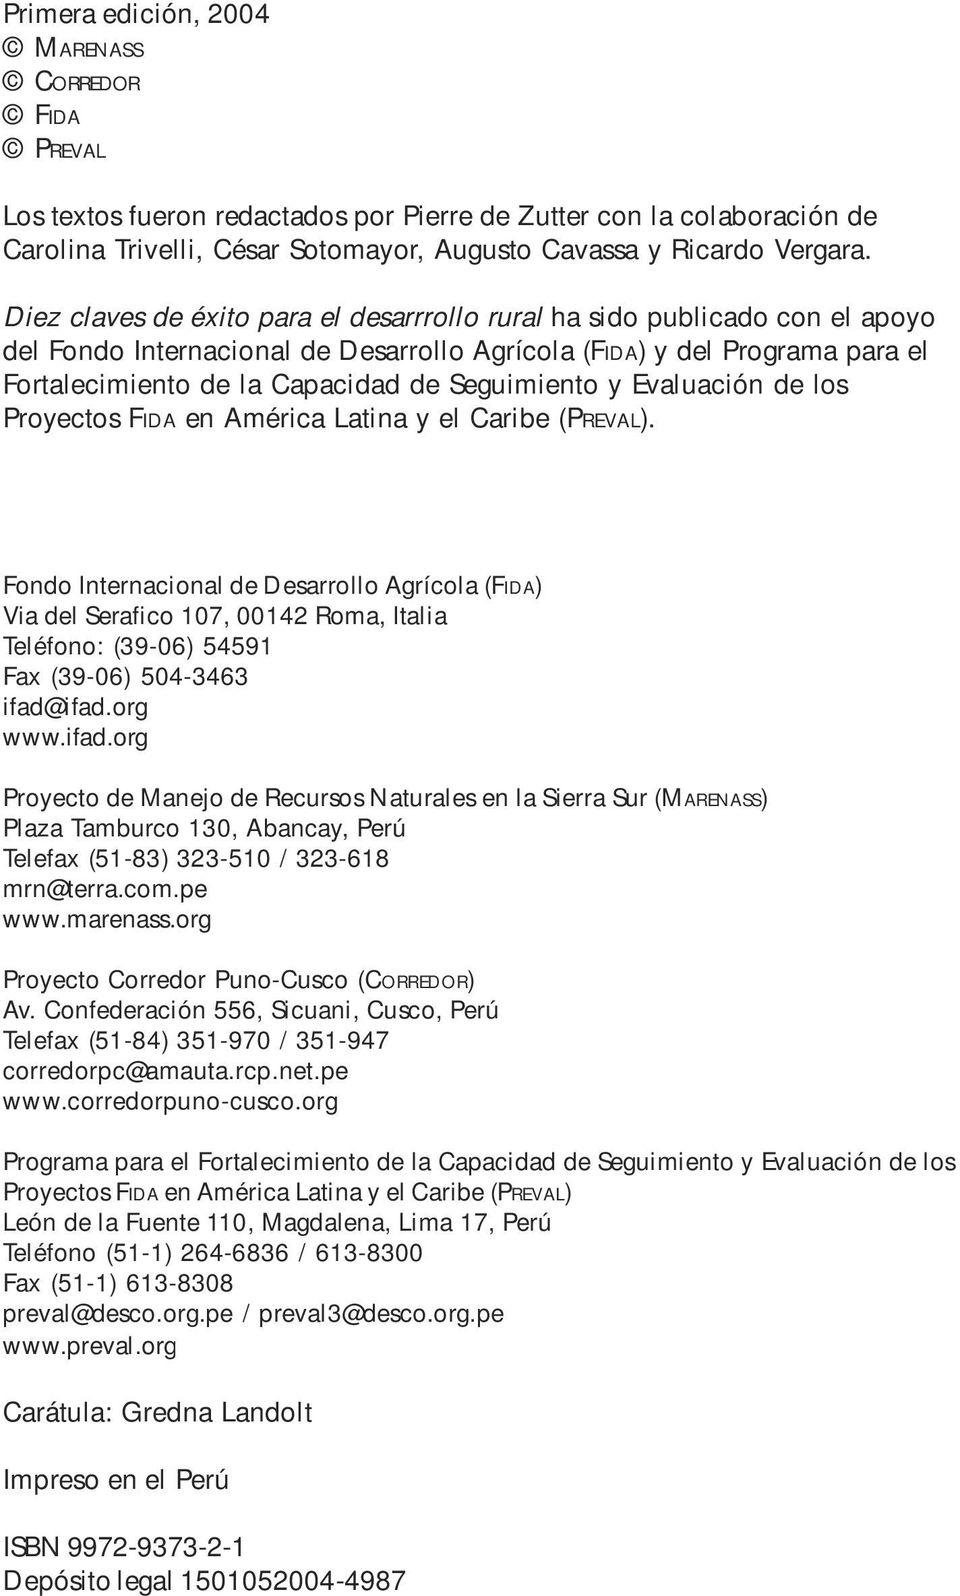 Seguimiento y Evaluación de los Proyectos FIDA en América Latina y el Caribe (PREVAL).